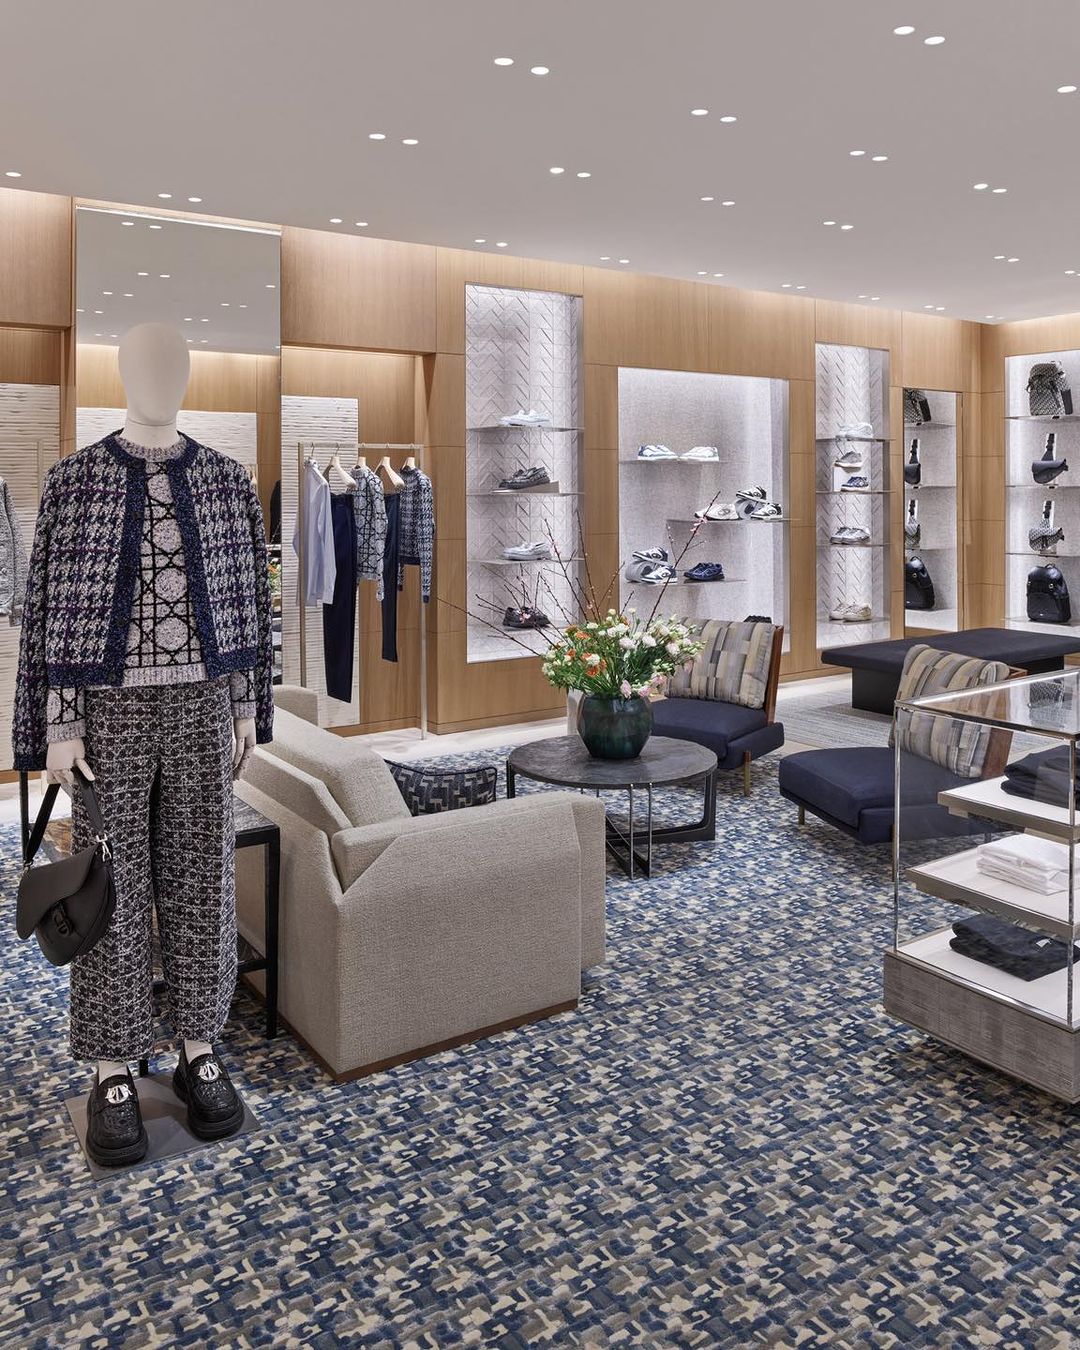 Рассматриваем замысловатый дизайн нового бутика Dior в Женеве